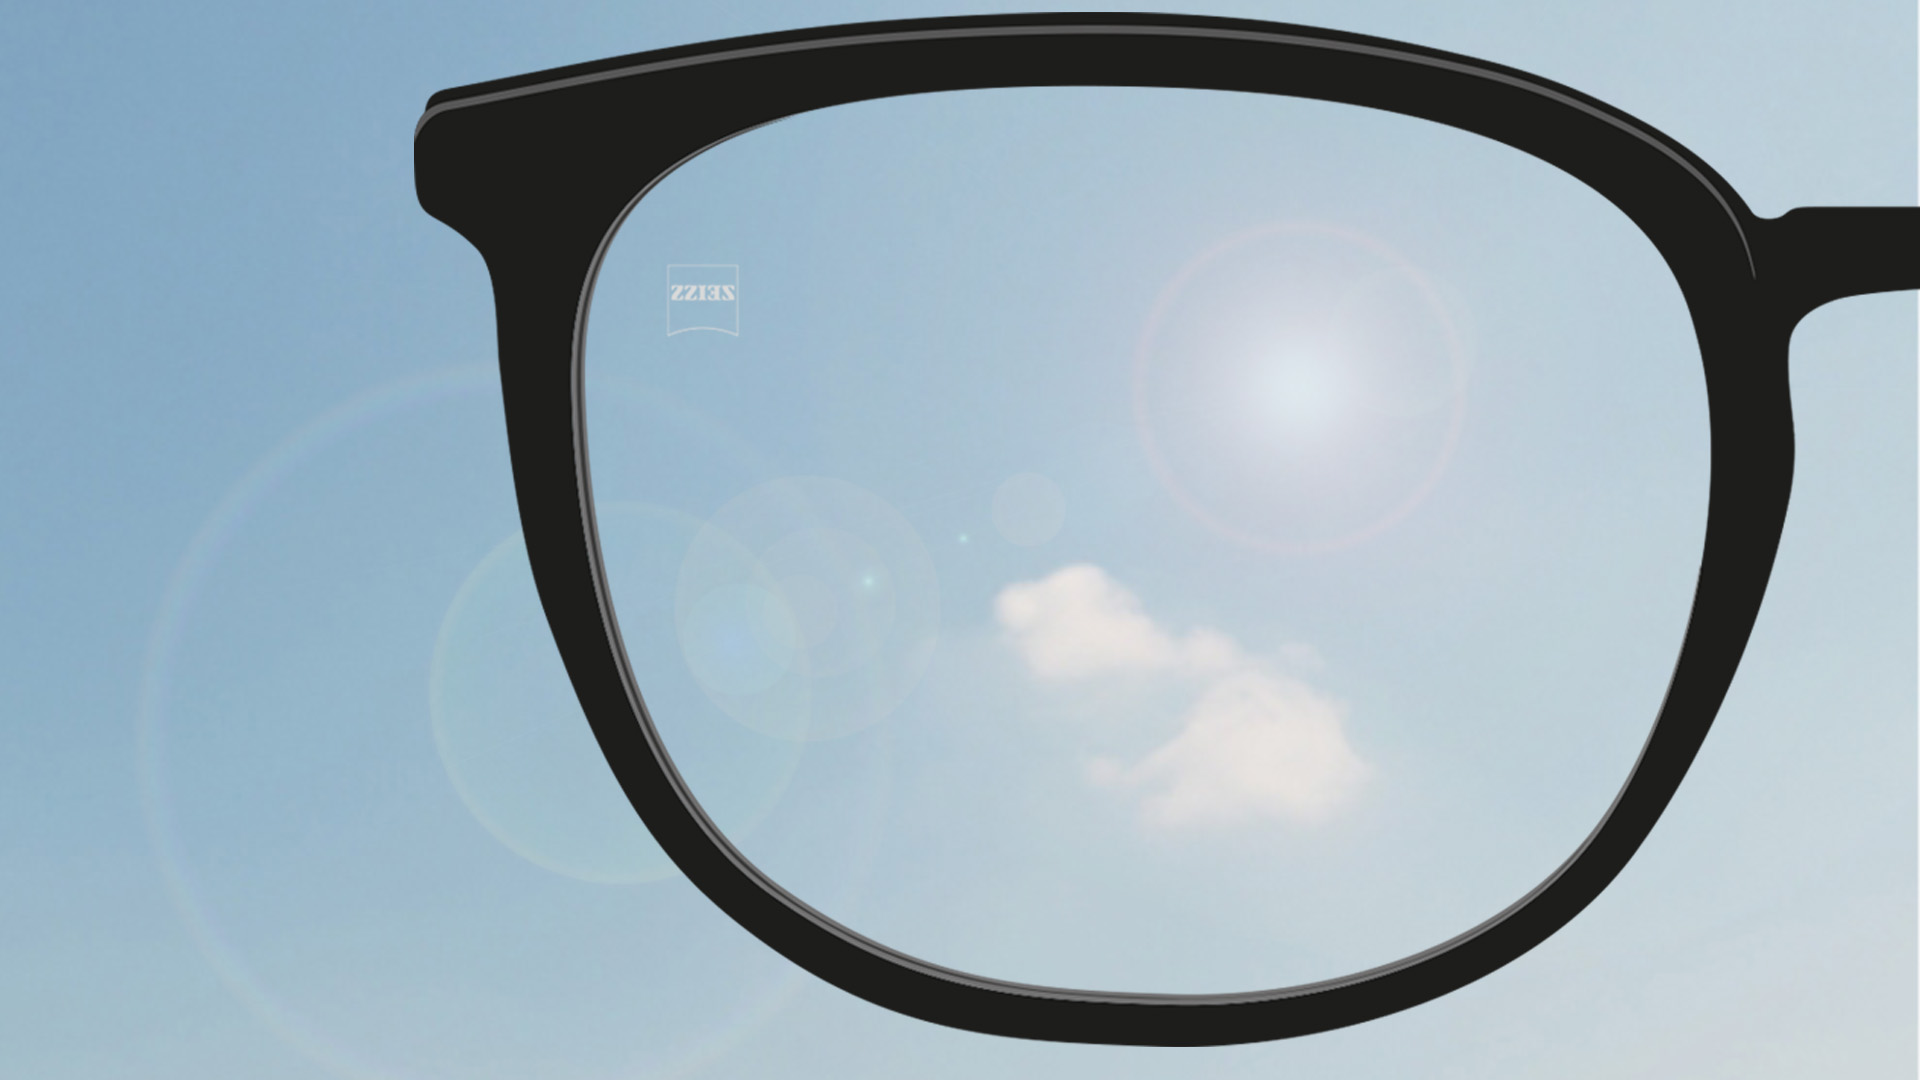 Een point-of-view-foto met de zon die op het brillenglas schijnt.